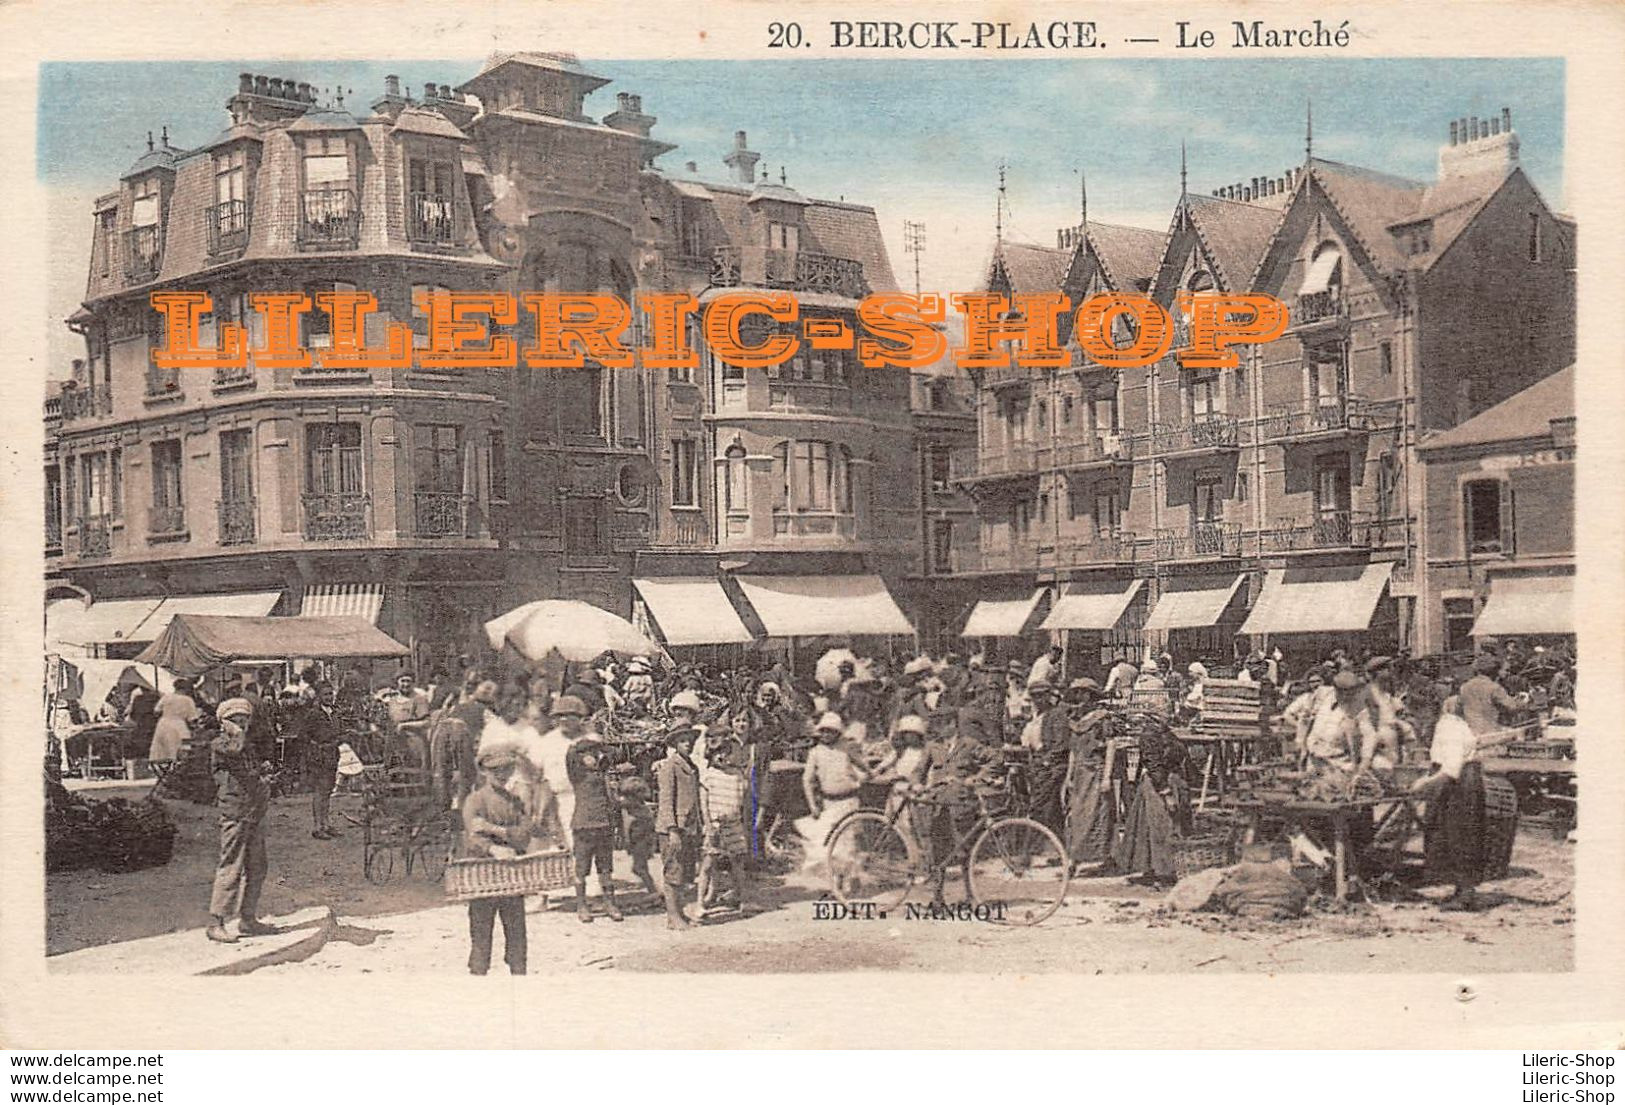 Berk-plage (62) Le Marché - Éd. NANGOT - N° 20 - Berck